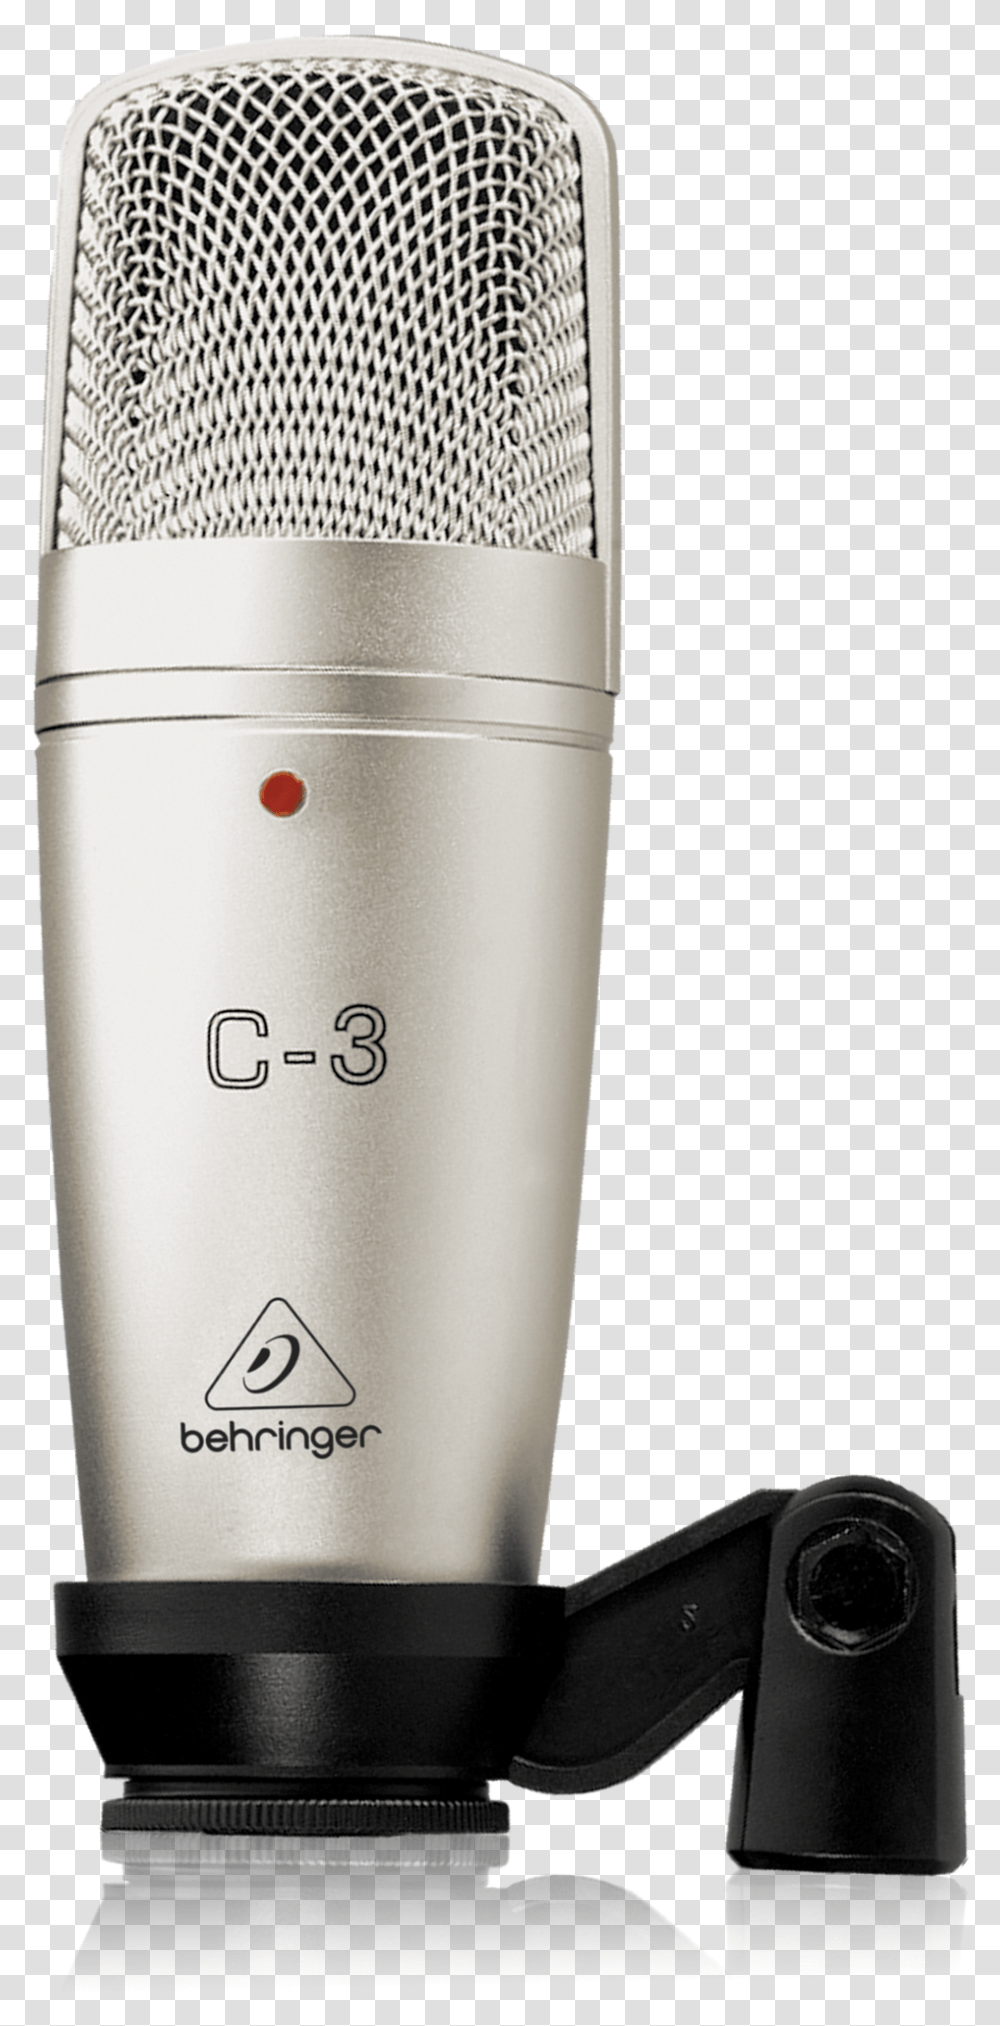 Behringer Product C 3 Behringer C1, Bottle, Shaker, Milk, Beverage Transparent Png